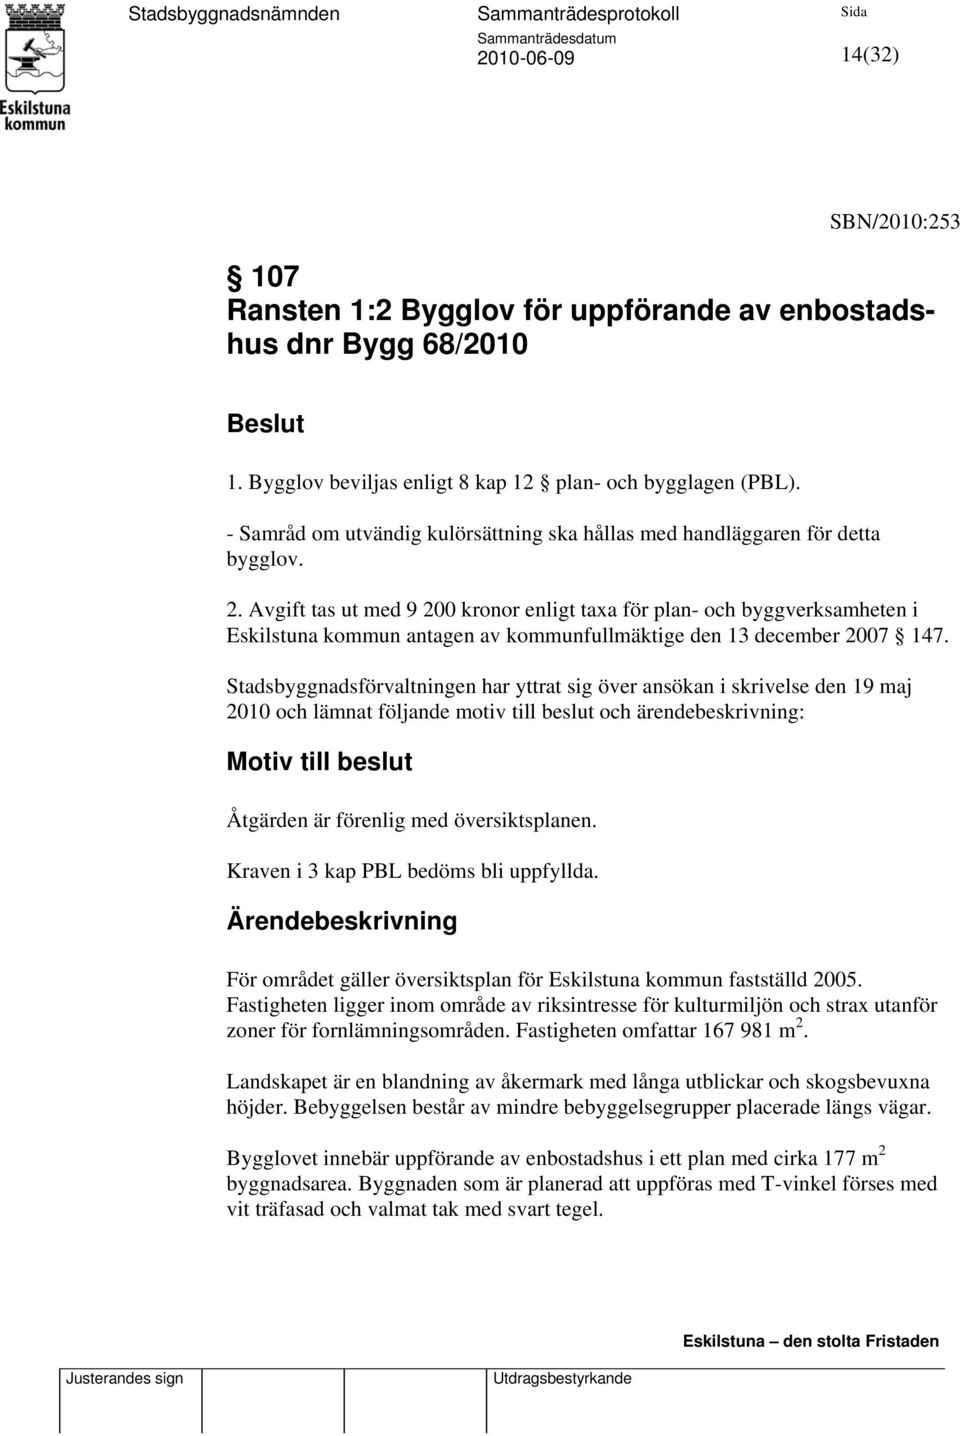 Avgift tas ut med 9 200 kronor enligt taxa för plan- och byggverksamheten i Eskilstuna kommun antagen av kommunfullmäktige den 13 december 2007 147.